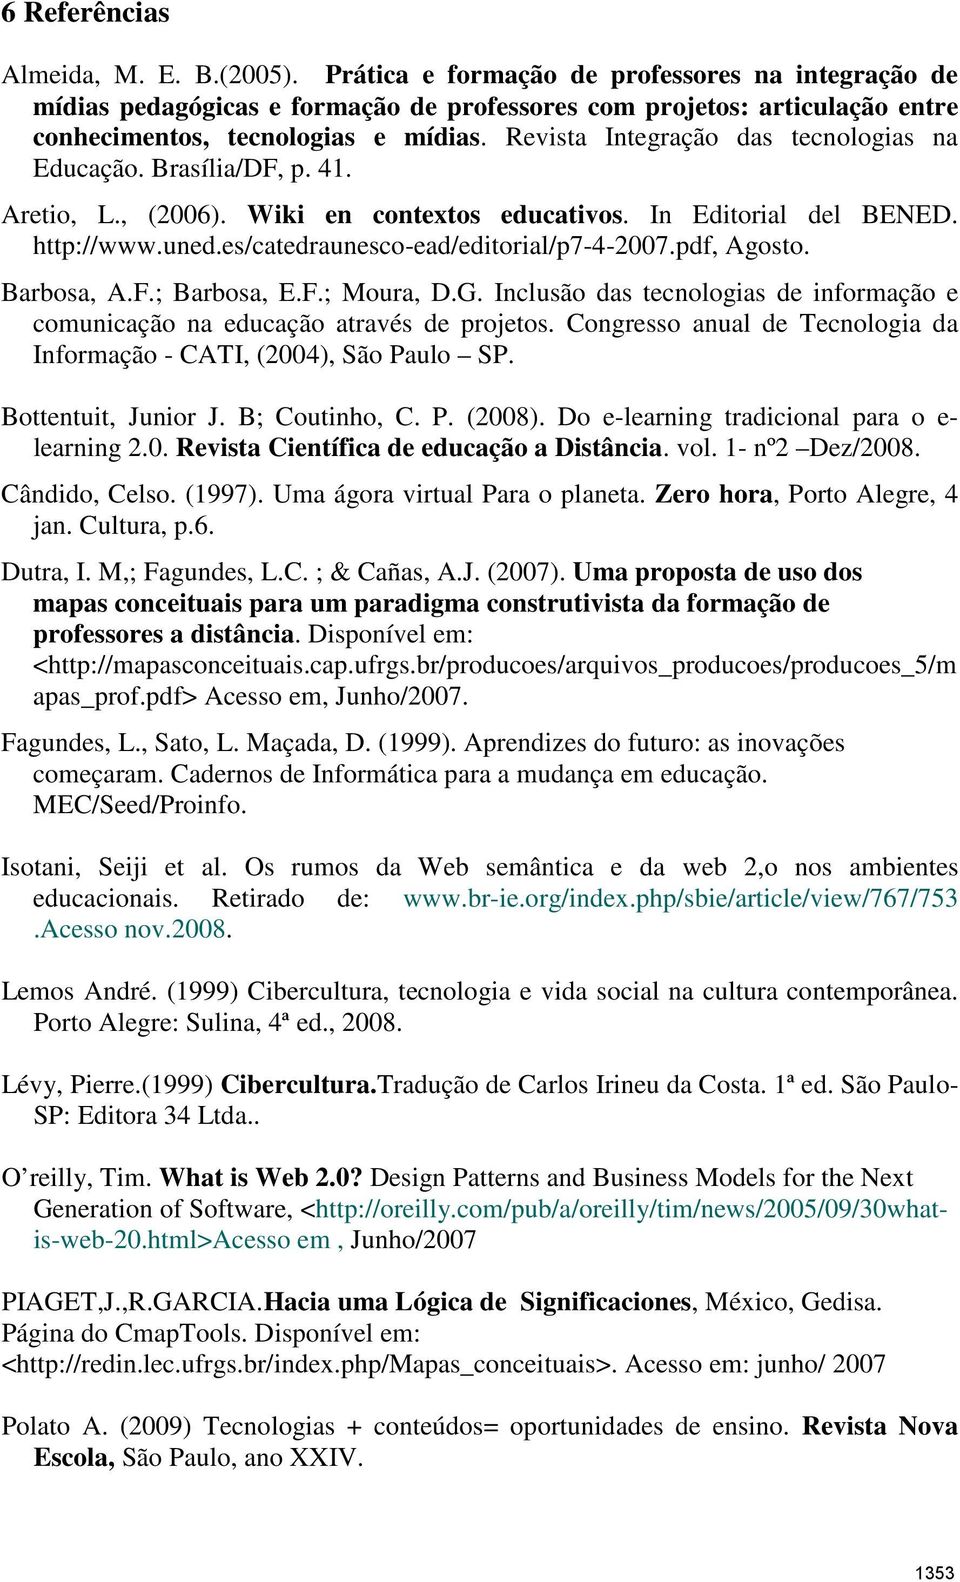 Revista Integração das tecnologias na Educação. Brasília/DF, p. 41. Aretio, L., (2006). Wiki en contextos educativos. In Editorial del BENED. http://www.uned.es/catedraunesco-ead/editorial/p7-4-2007.